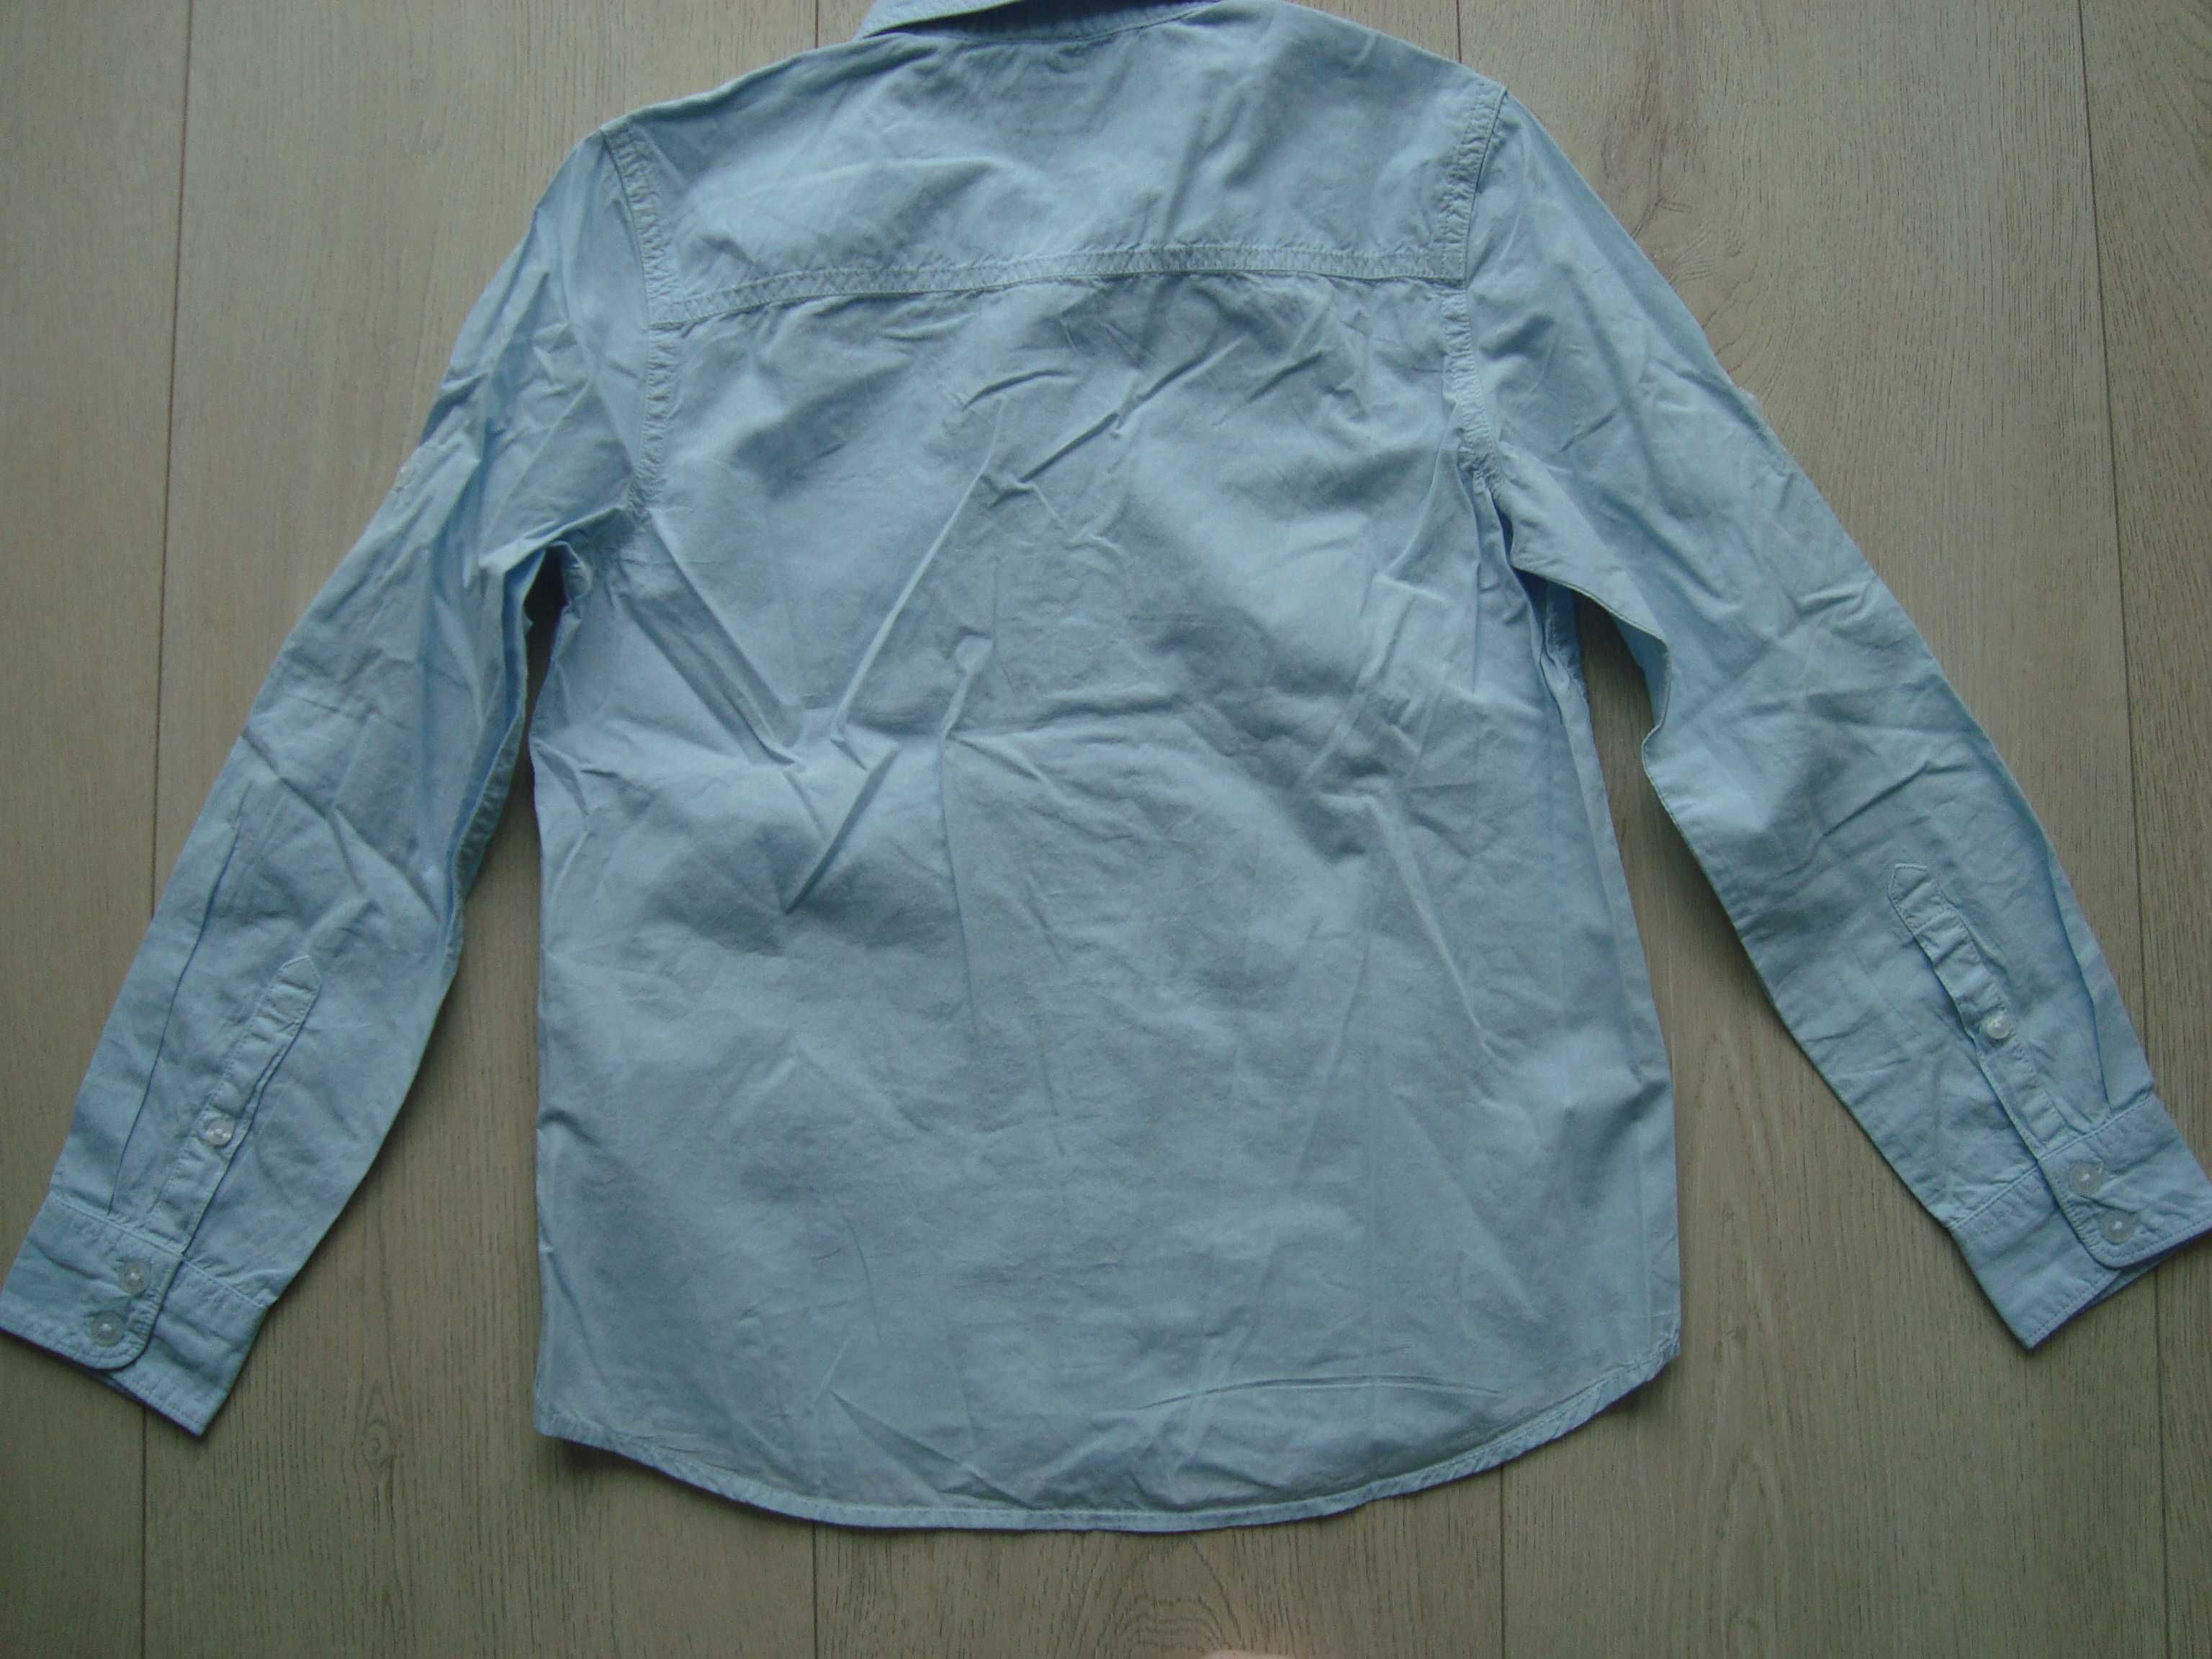 Koszula gładka, niebieska marki Pepe Jeans, nowa, chłopiec 140cm/10lat